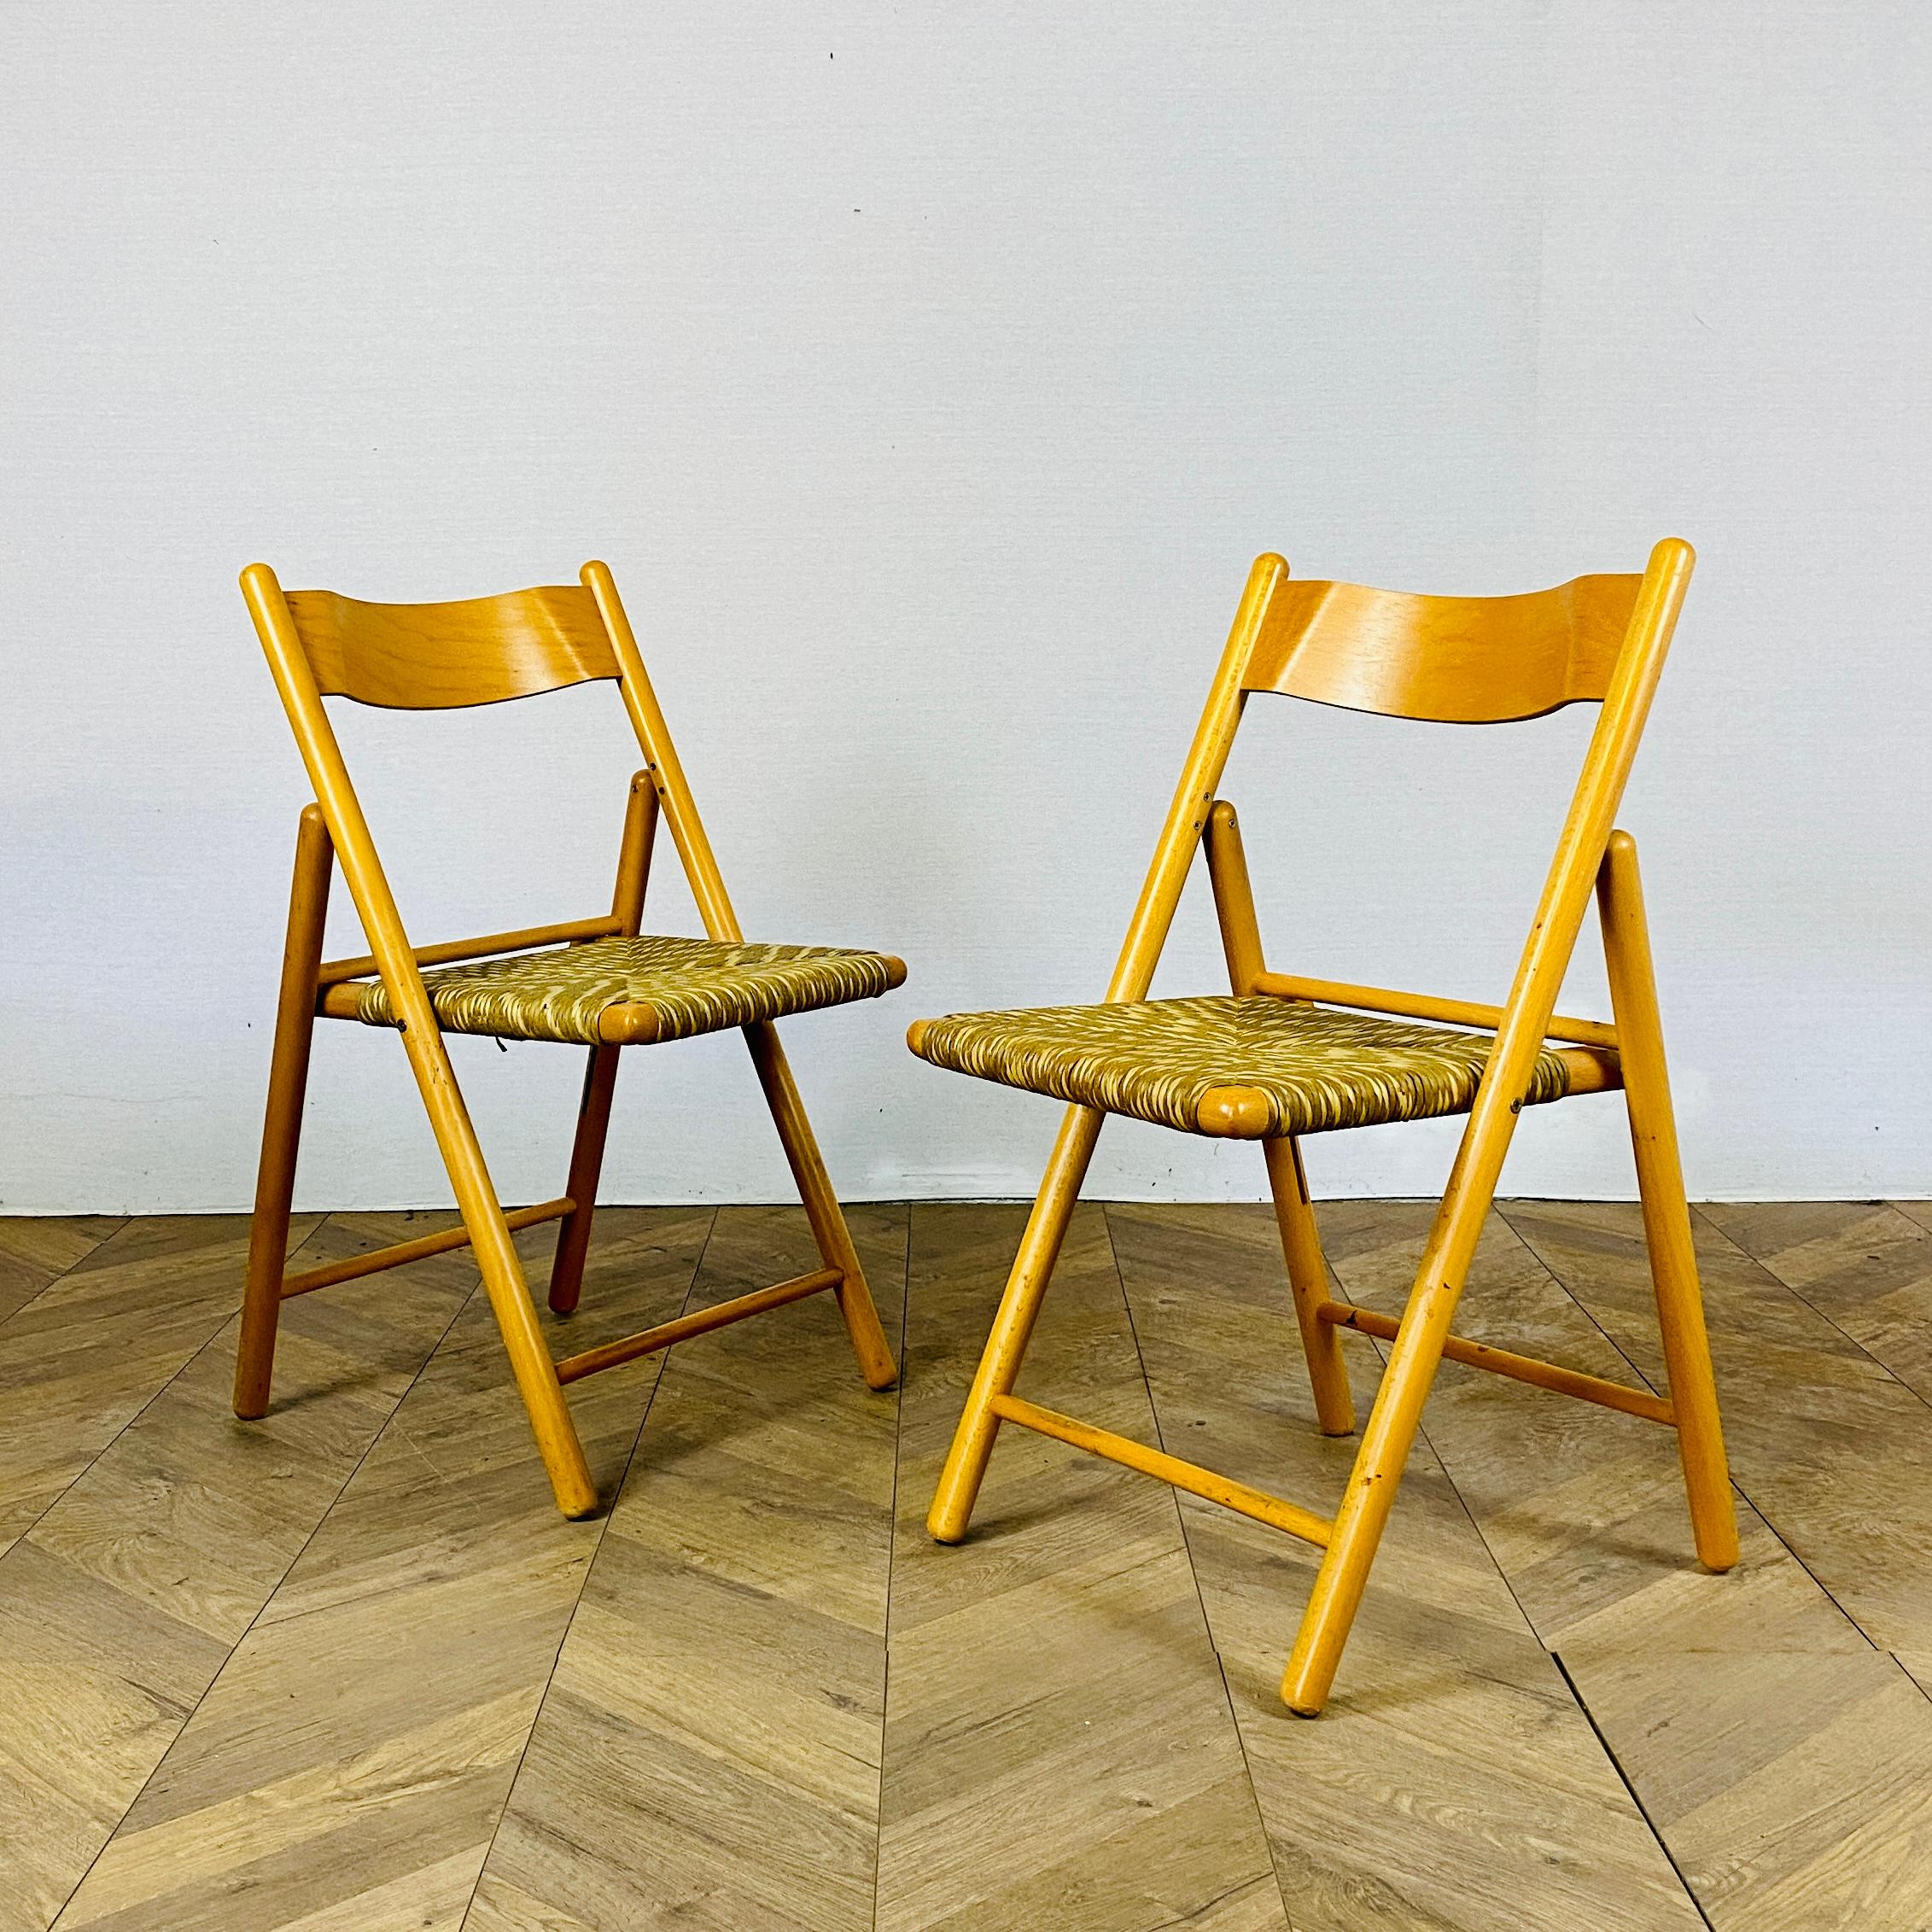 Ein Satz von 2, Mid Century Italian Folding Chairs, aus Strand mit Seegras Sitze gemacht.

Die Stühle sind strukturell stark und in sehr gutem Zustand mit nur geringen Schrammen und Flecken, wie abgebildet.